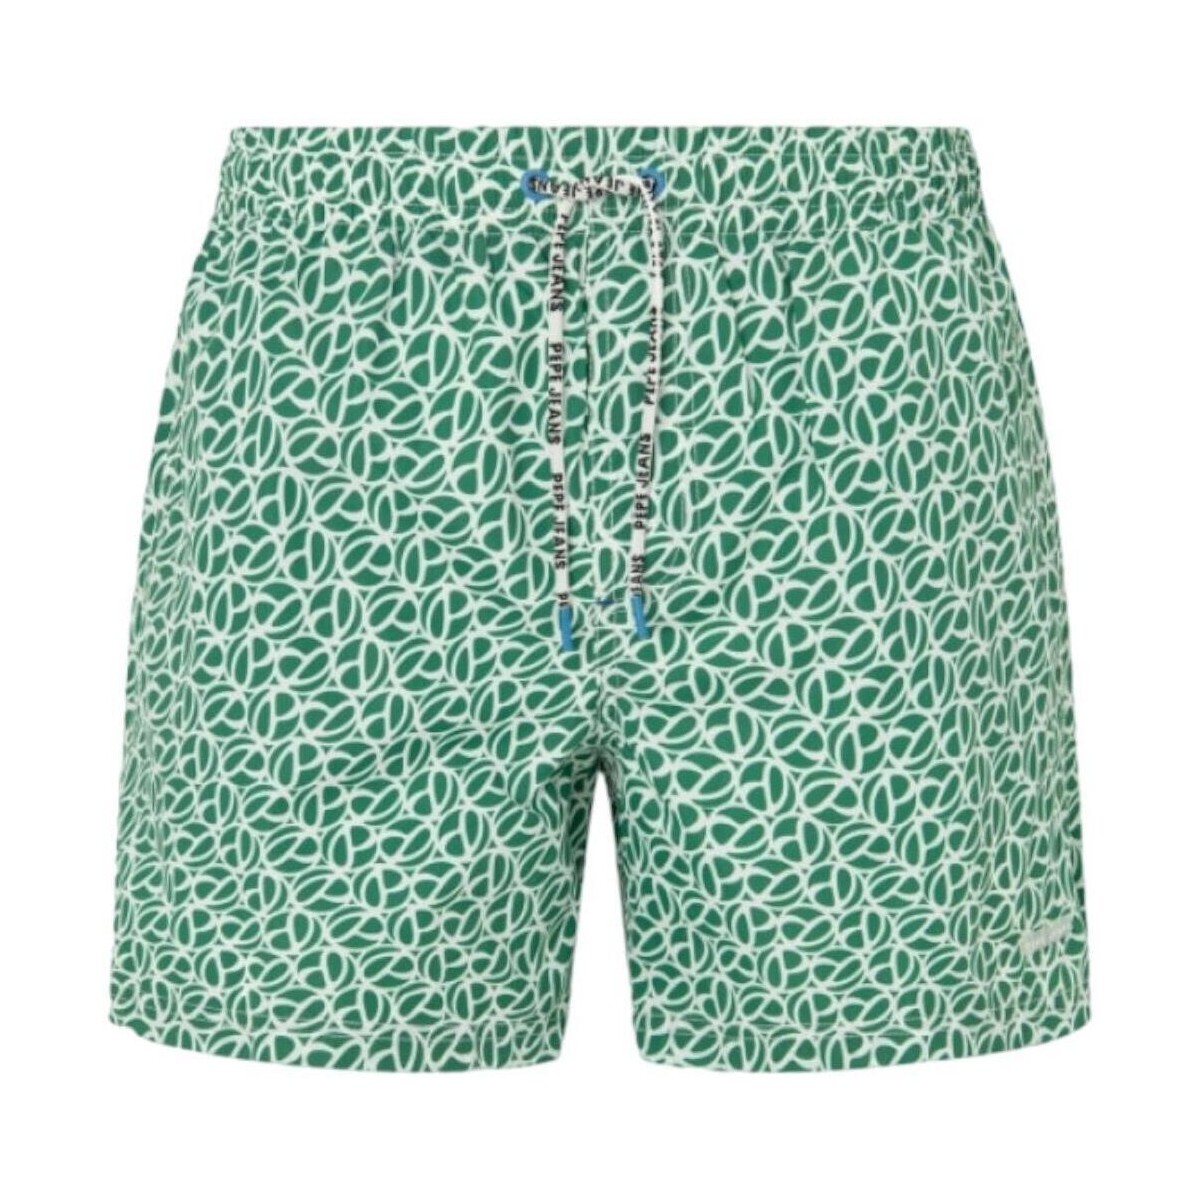 Υφασμάτινα Άνδρας Μαγιώ / shorts για την παραλία Pepe jeans  Green